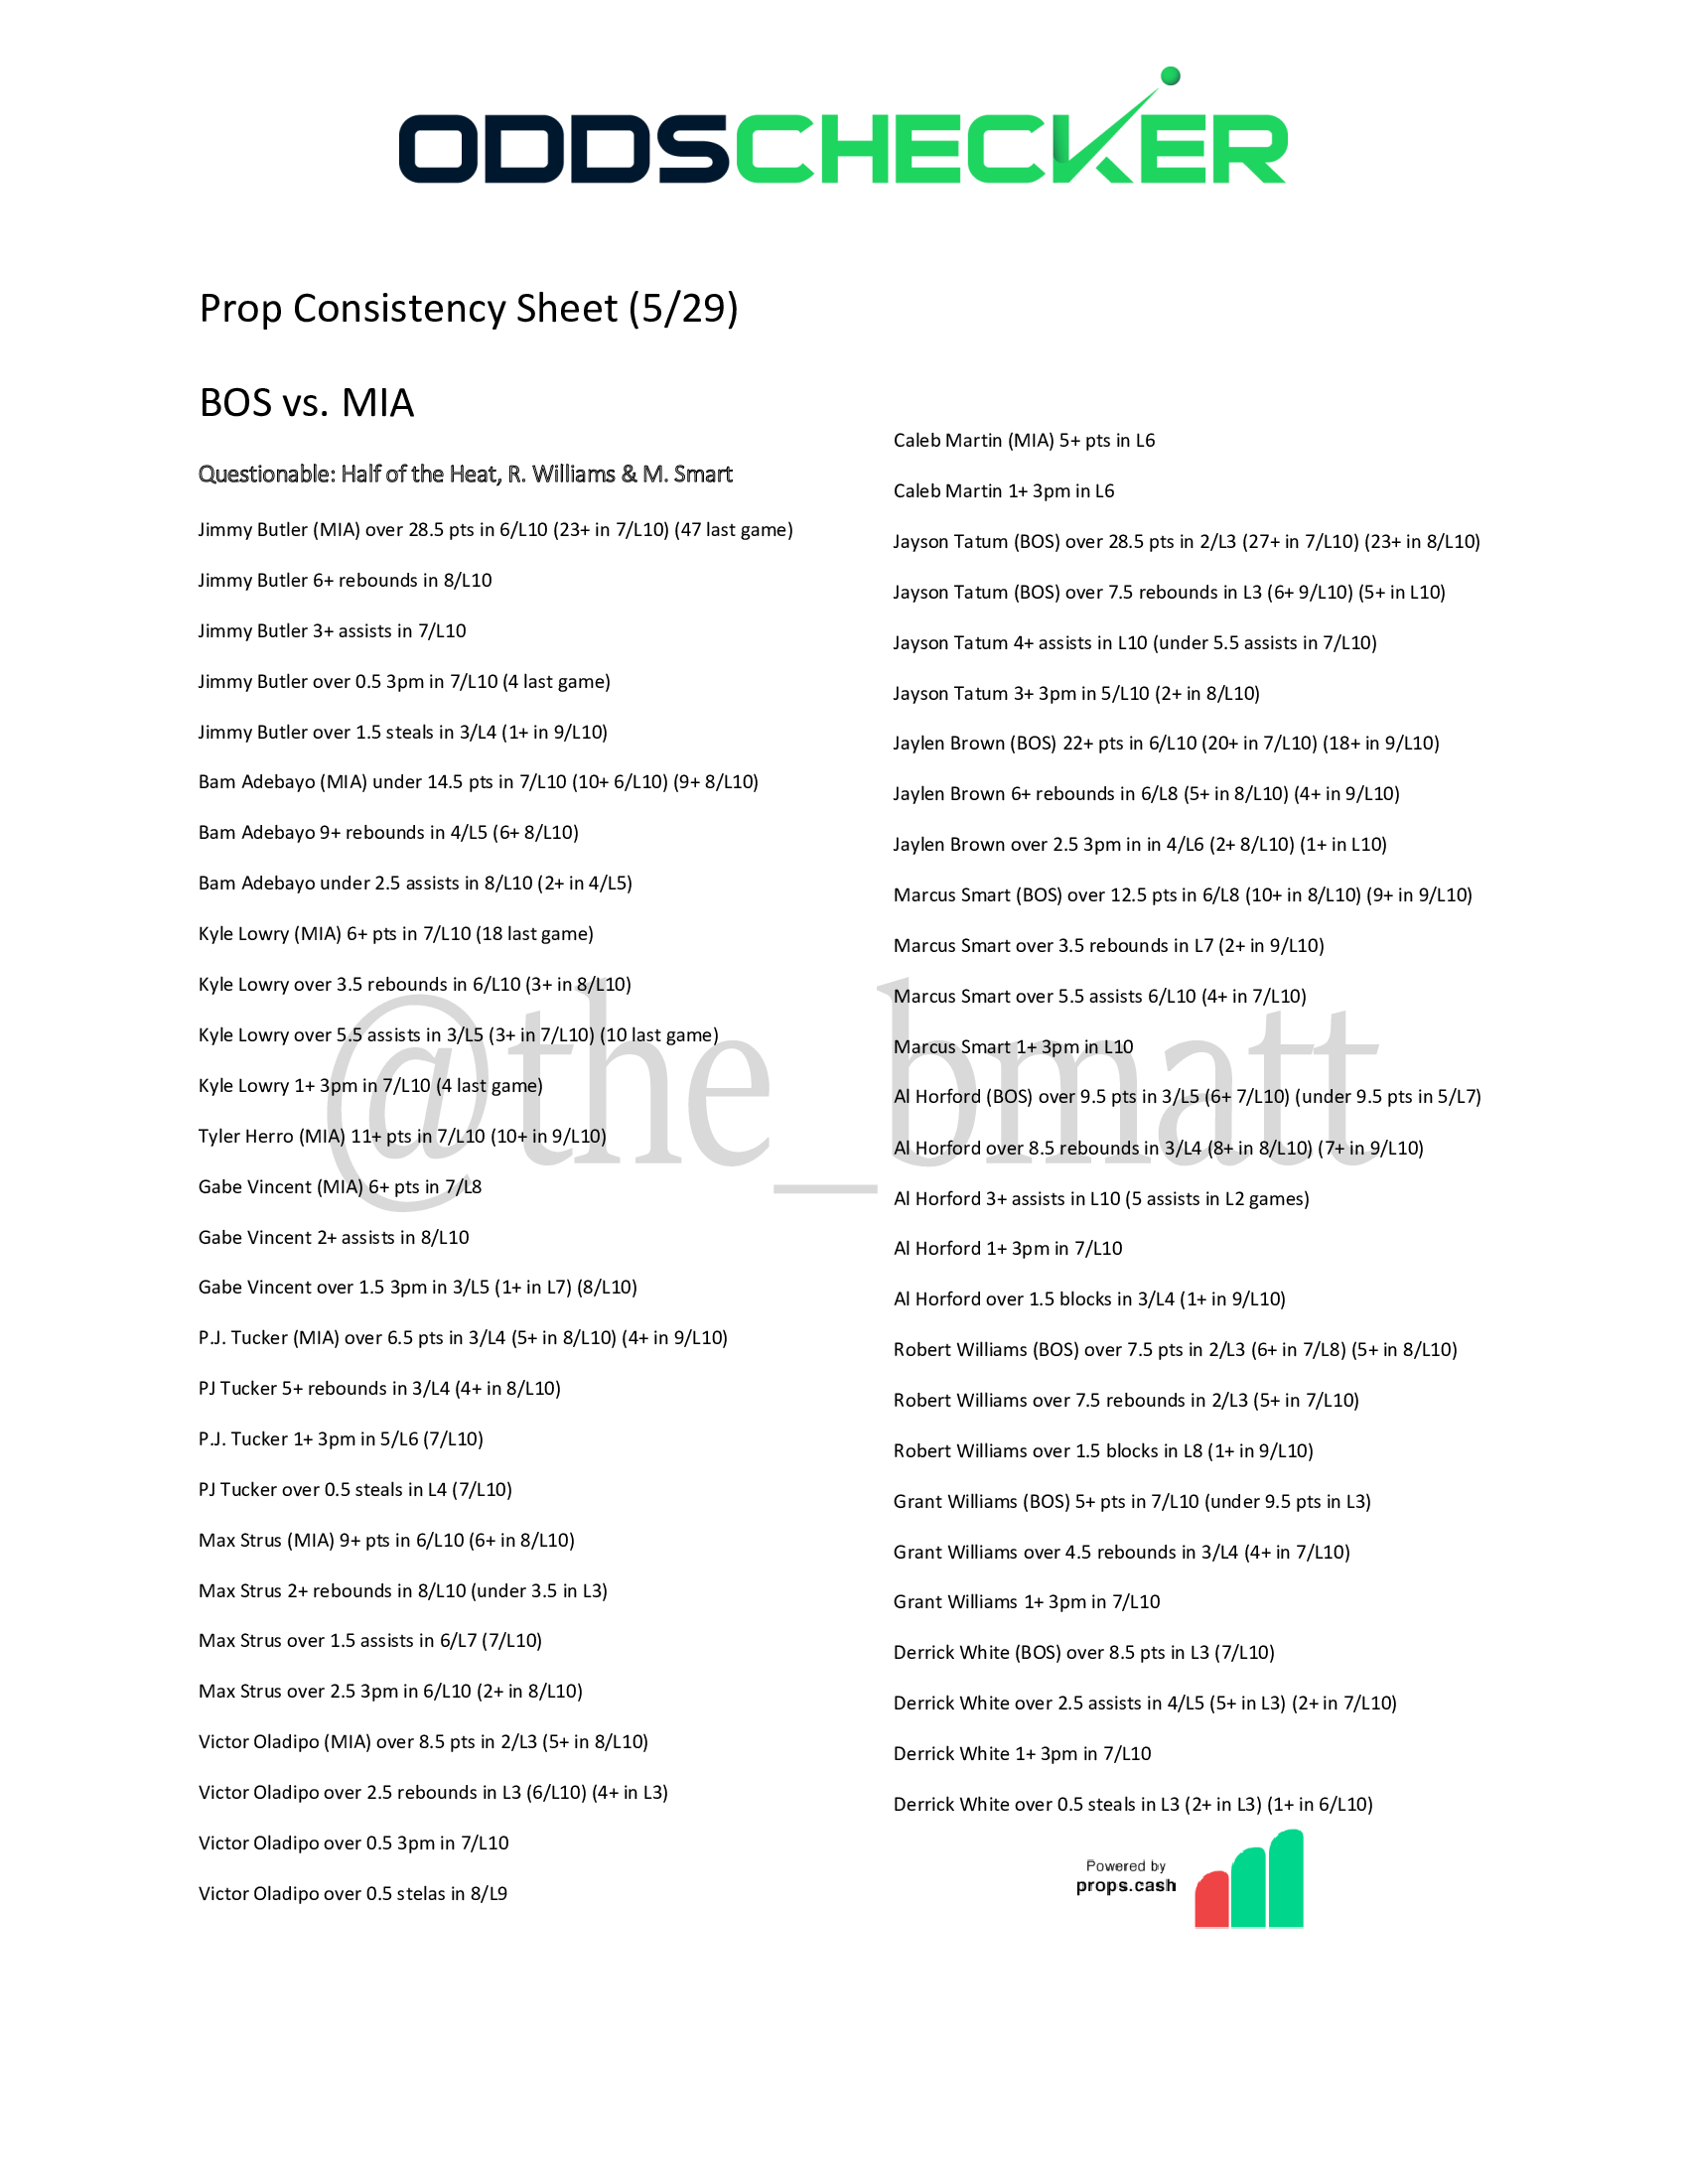 BrianMatthews Prop Consistency Sheet BOS-MIA-Game-7